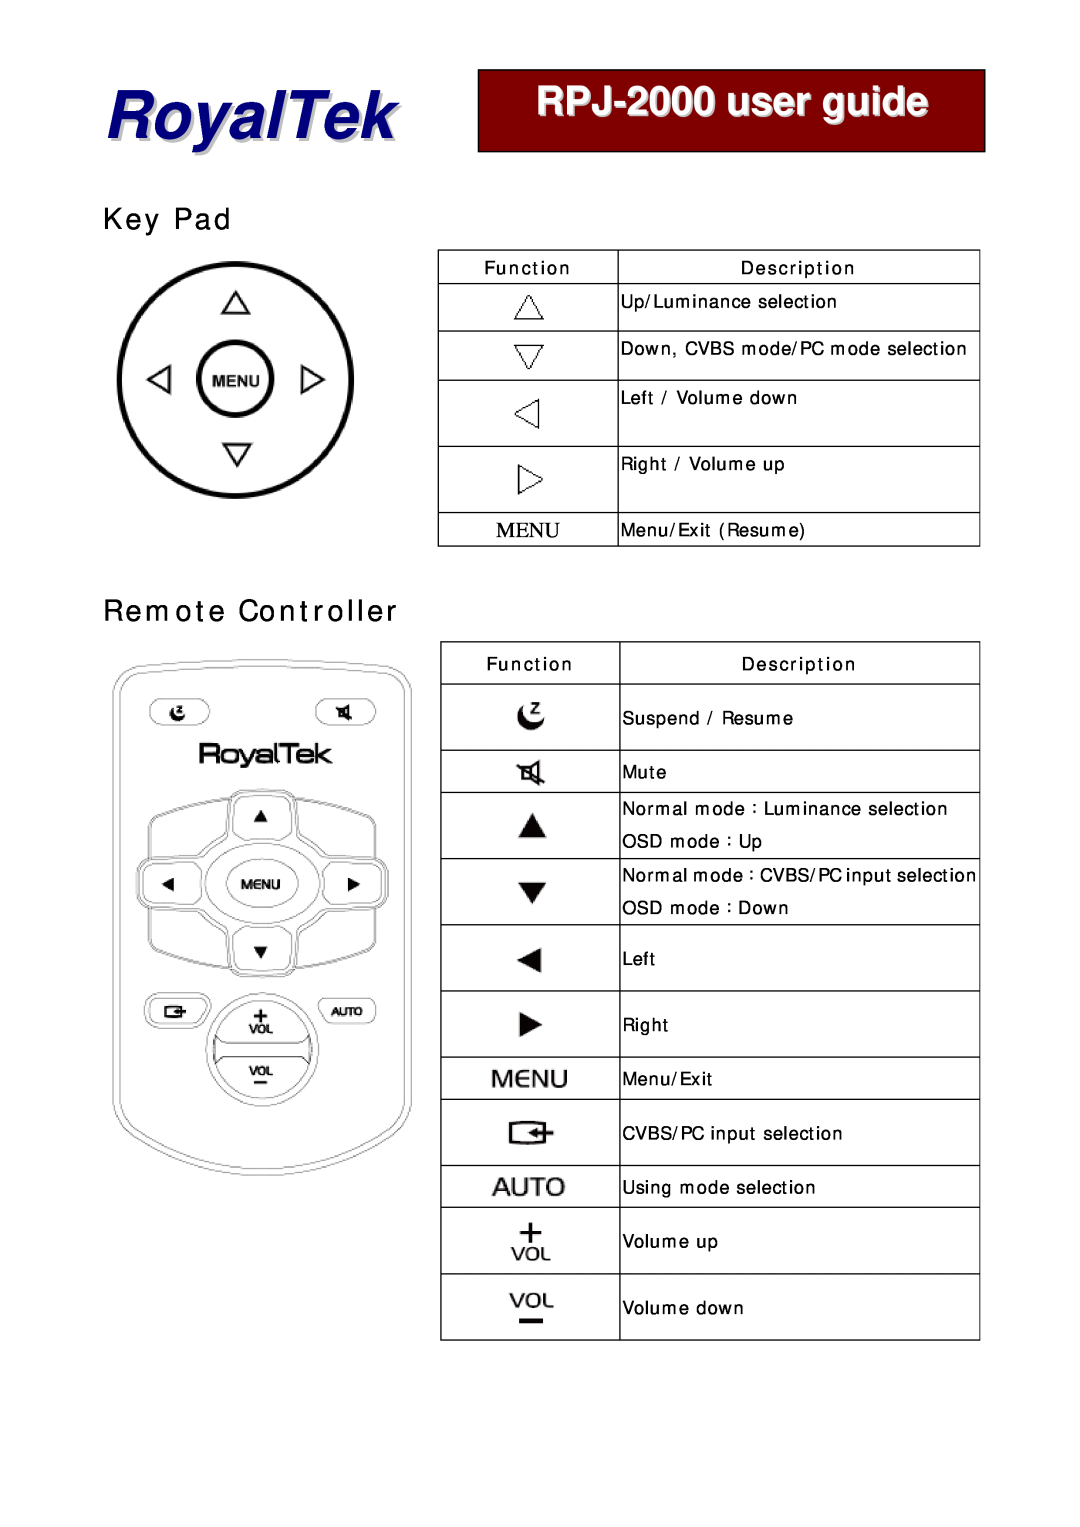 RoyalTek manual Key Pad, Remote Controller, Function, Description, RoyalTek, RPJ-2000user guide, Menu 